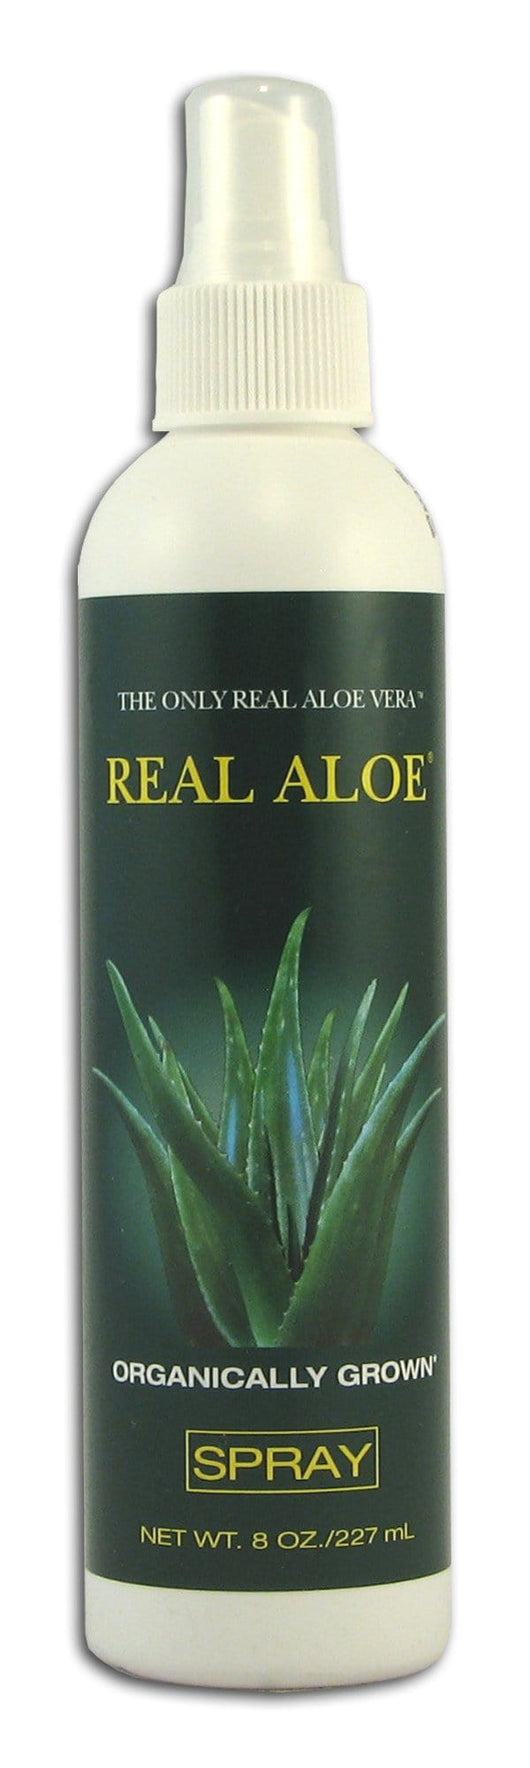 Real Aloe Co. Aloe Vera Spray - 8 ozs.